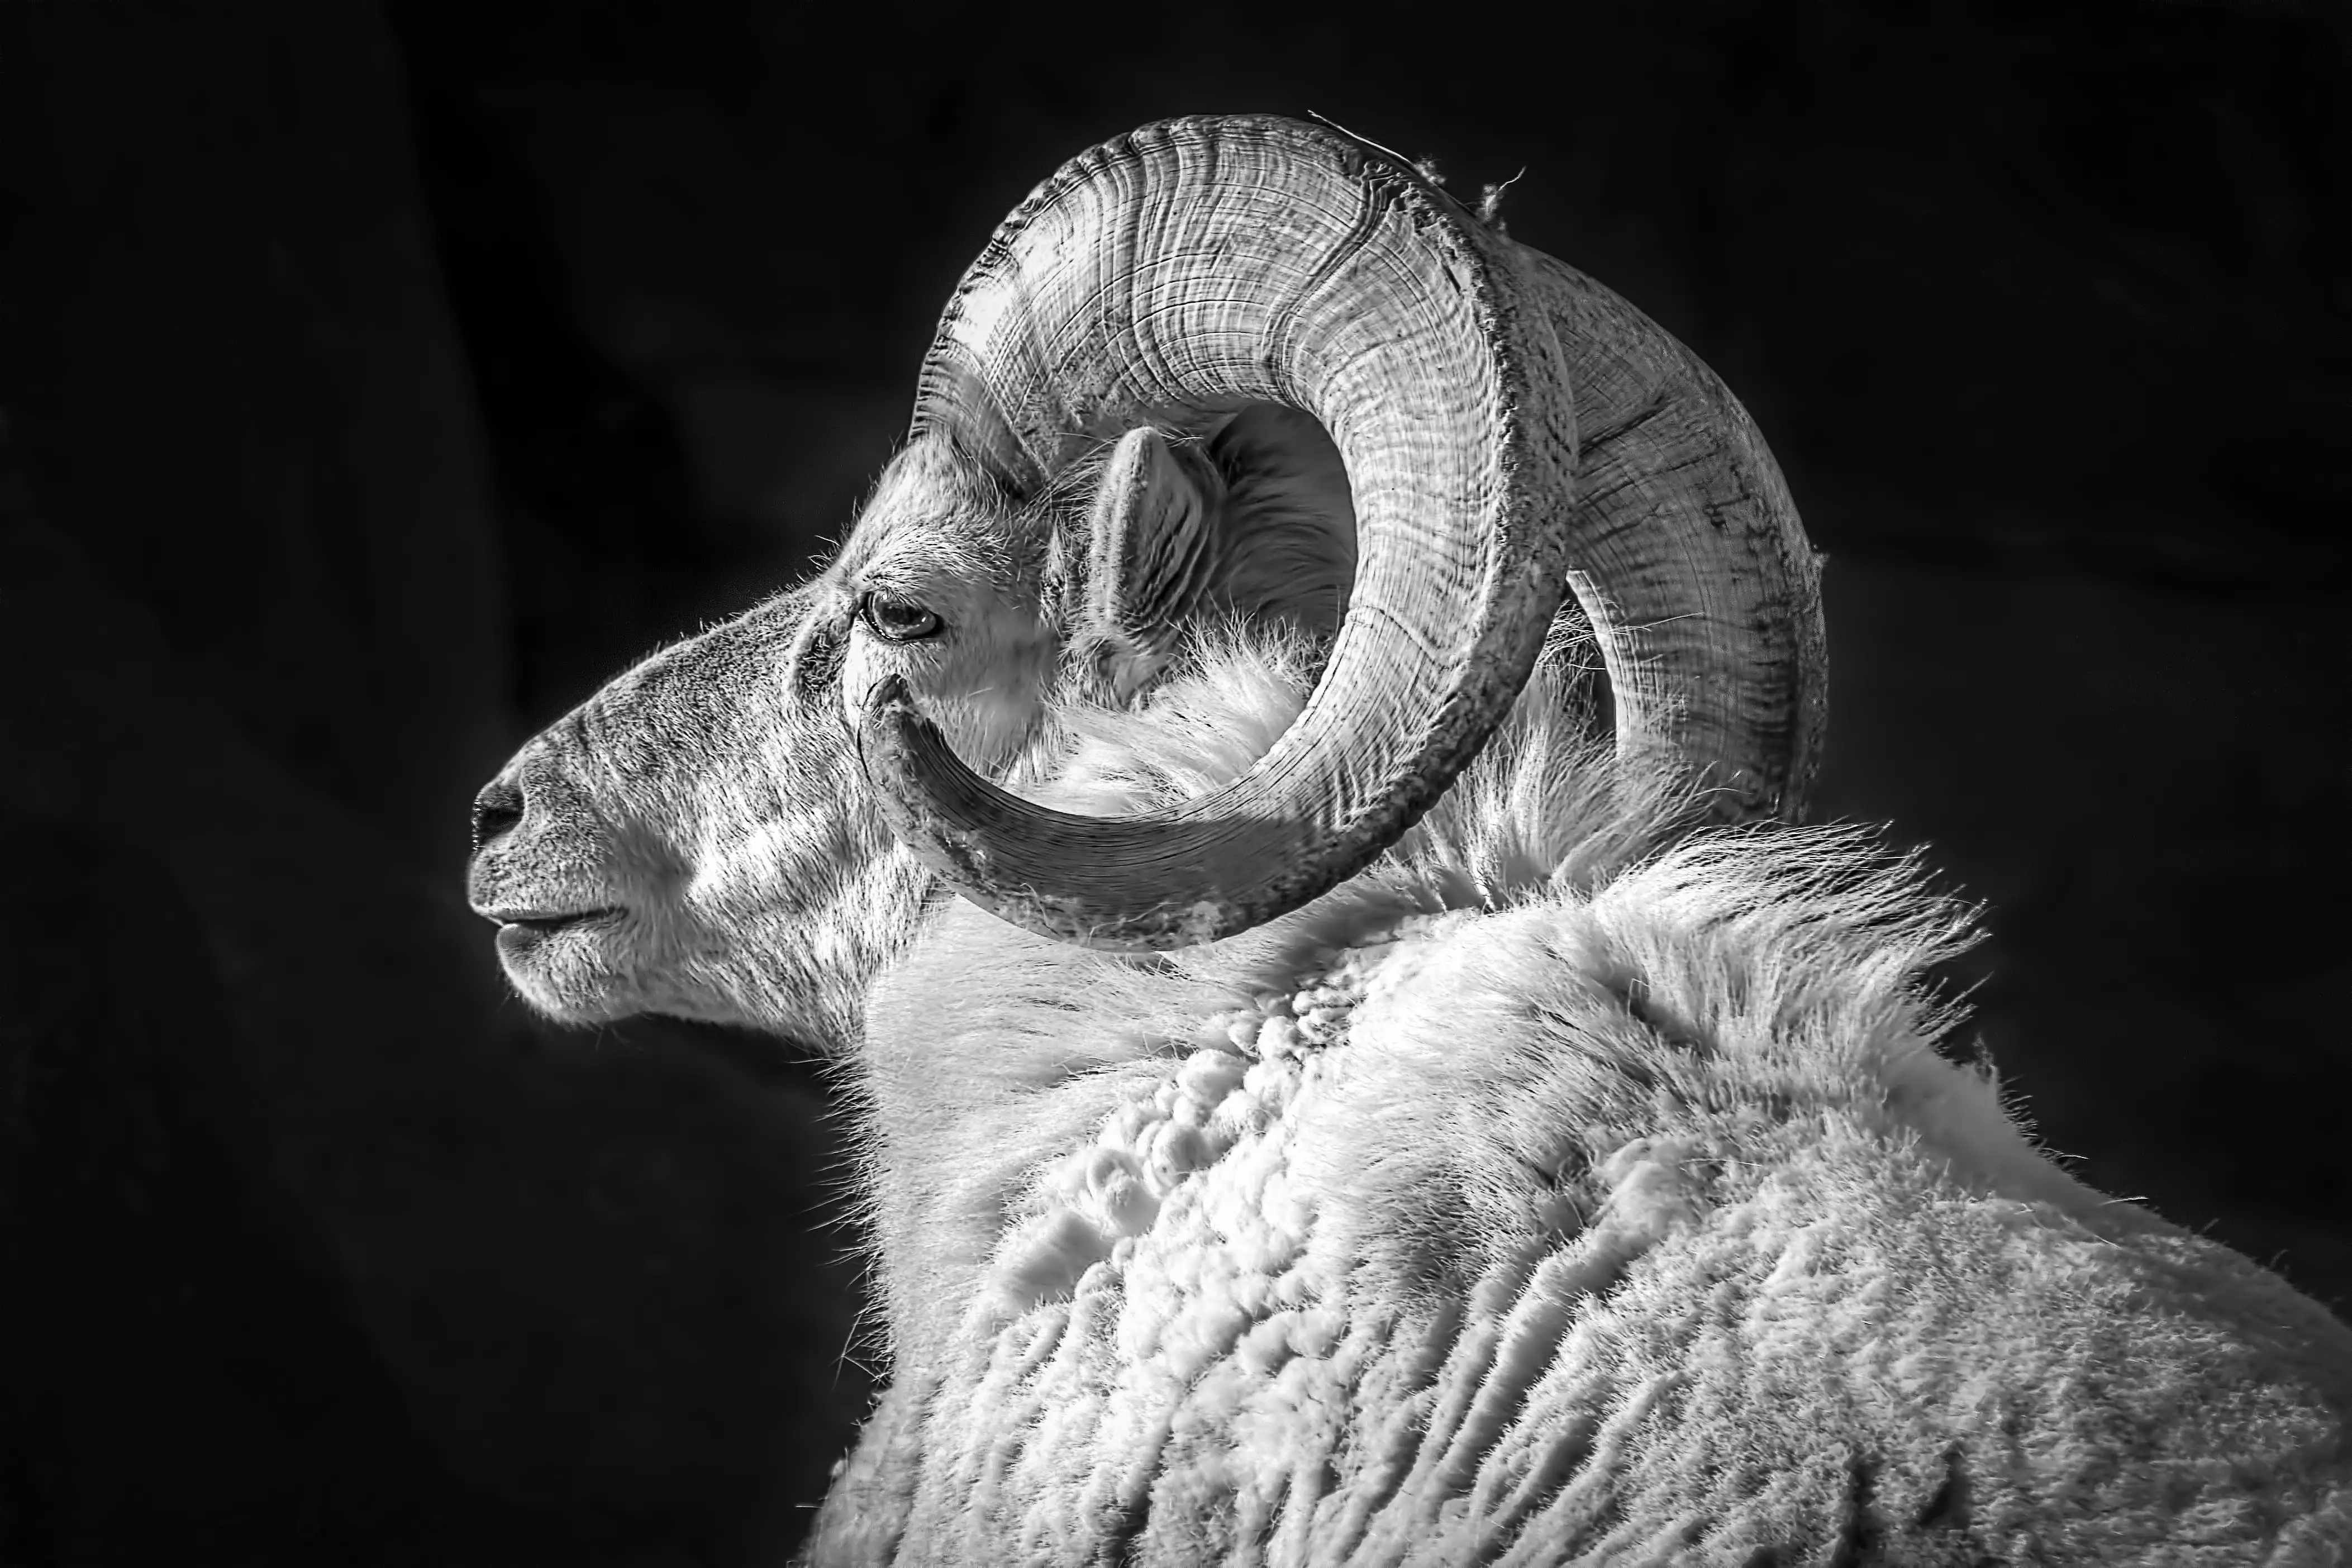 Aries Spirit Animal - Ram